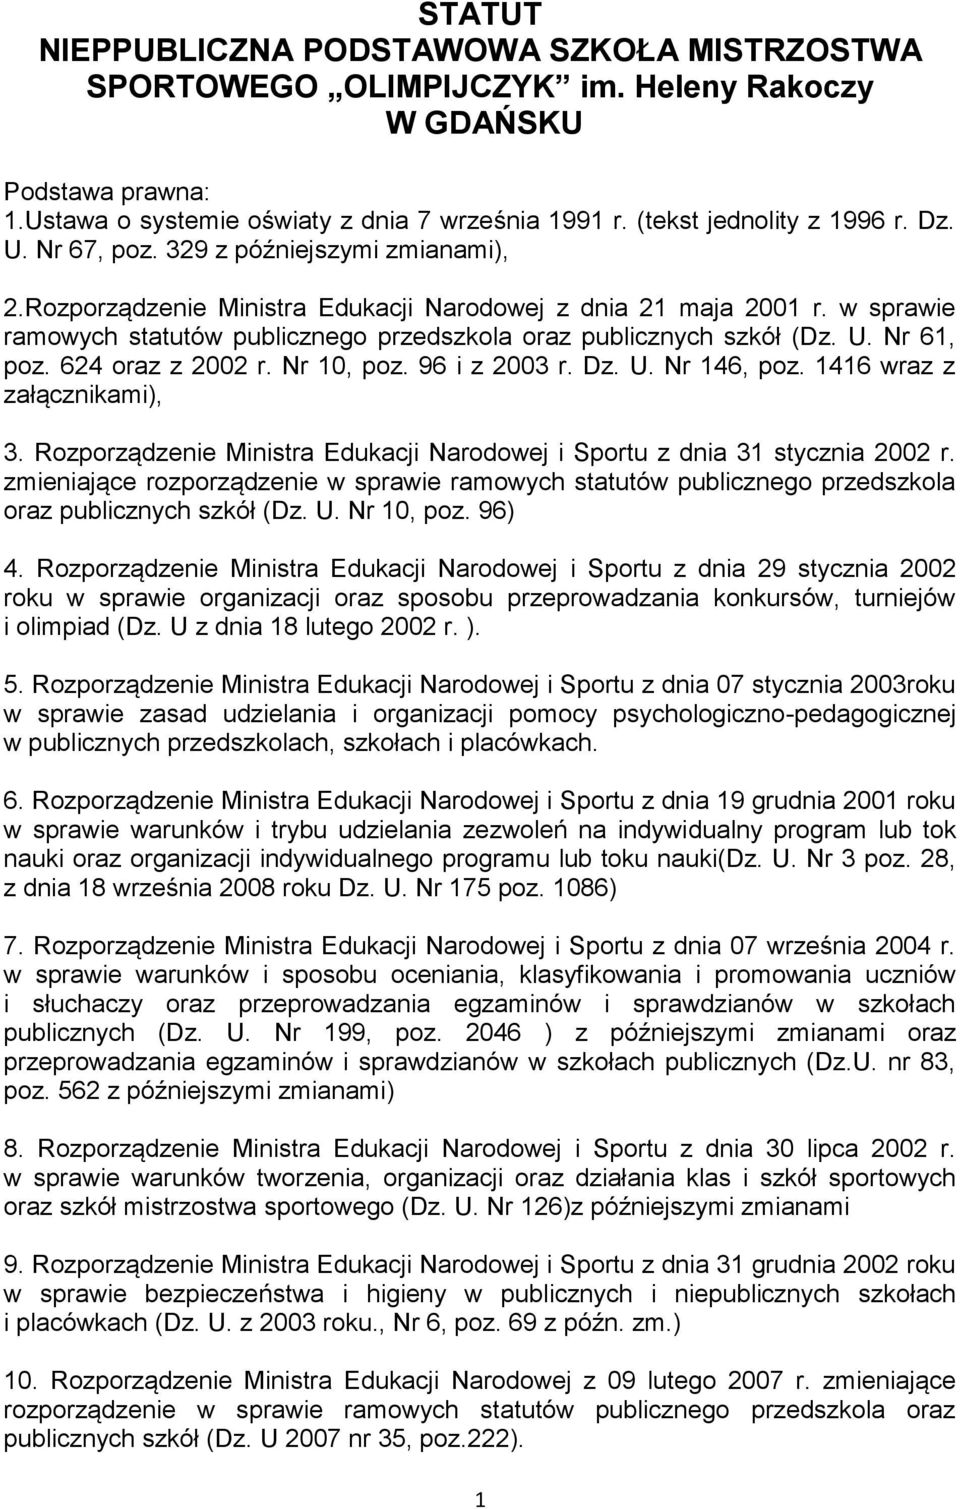 624 oraz z 2002 r. Nr 10, poz. 96 i z 2003 r. Dz. U. Nr 146, poz. 1416 wraz z załącznikami), 3. Rozporządzenie Ministra Edukacji Narodowej i Sportu z dnia 31 stycznia 2002 r.